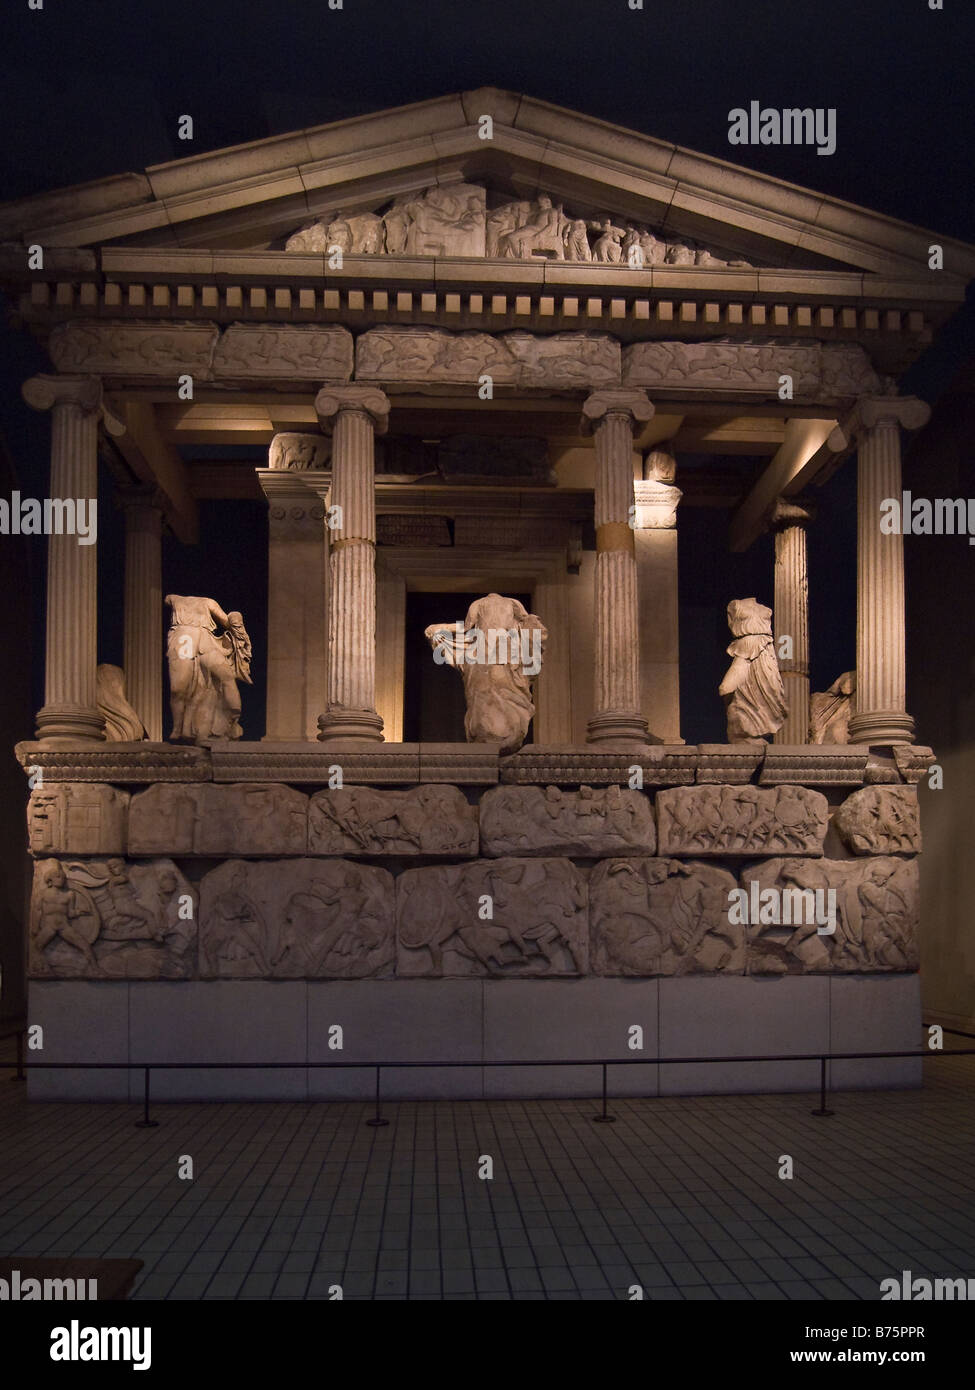 La Néréide Monument de Xanthos reconstruit au British Museum, Londres, Angleterre Banque D'Images